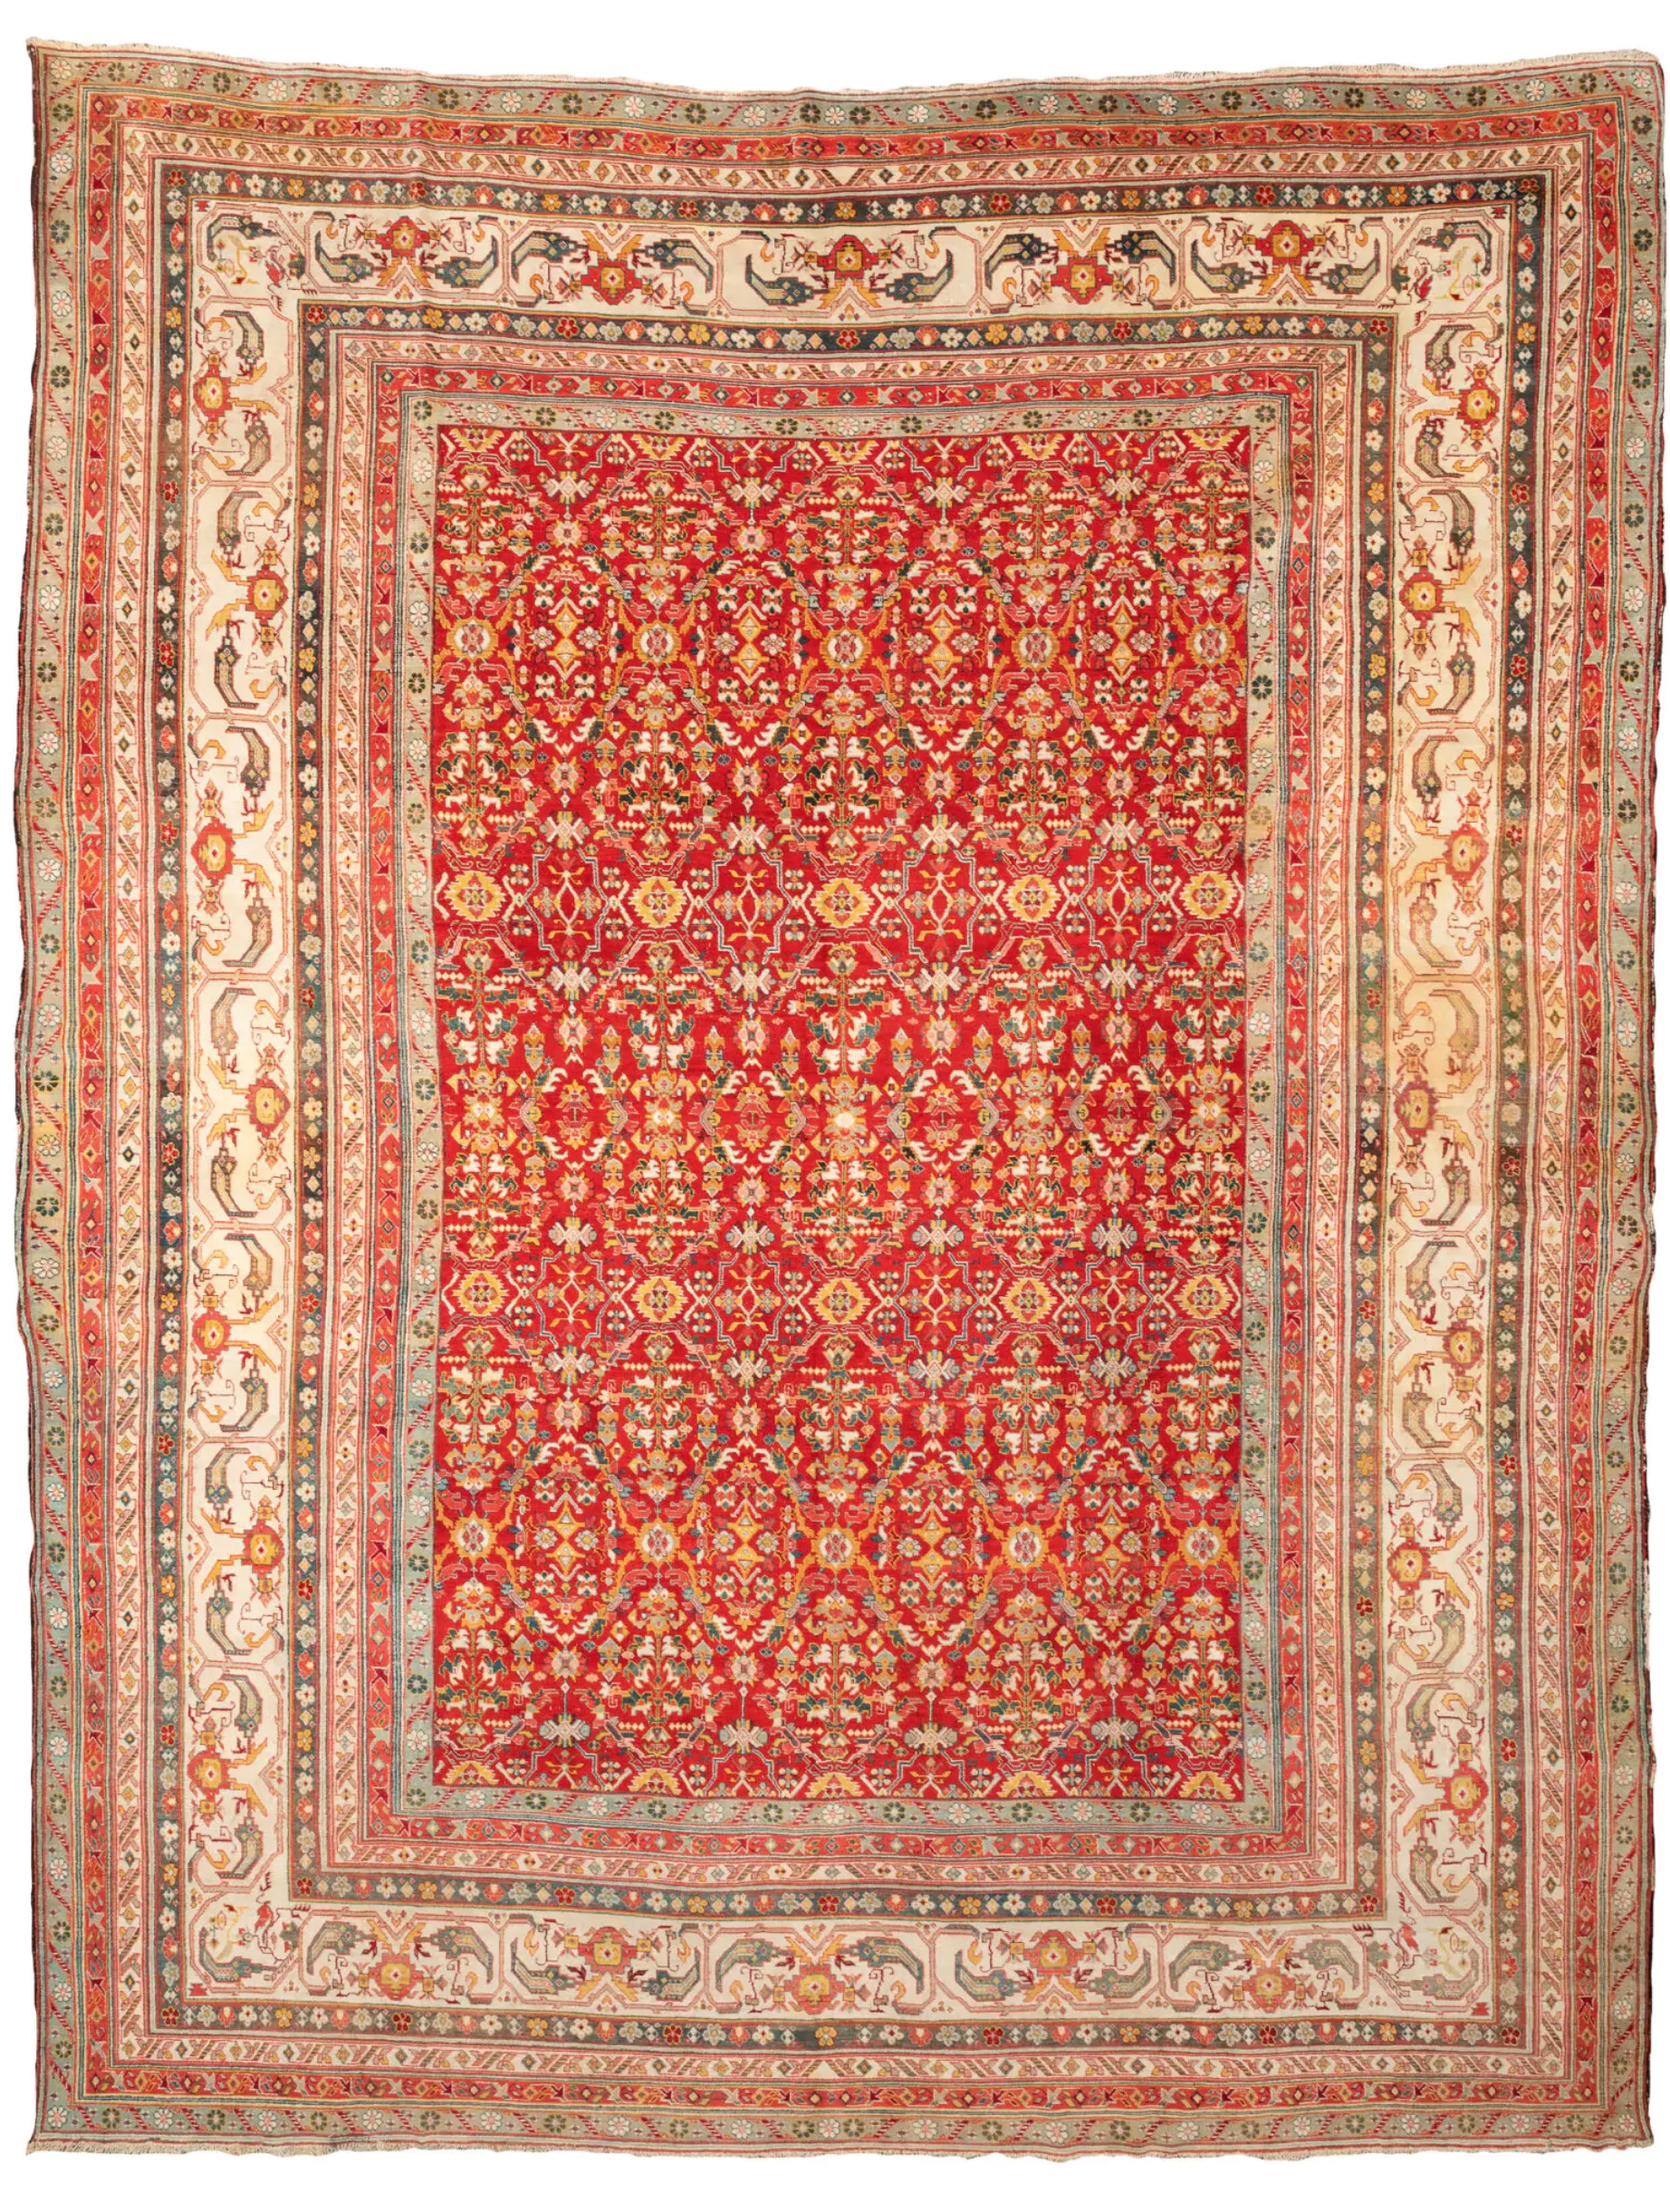 prezioso tappeto decorativo indiano della città di Agra